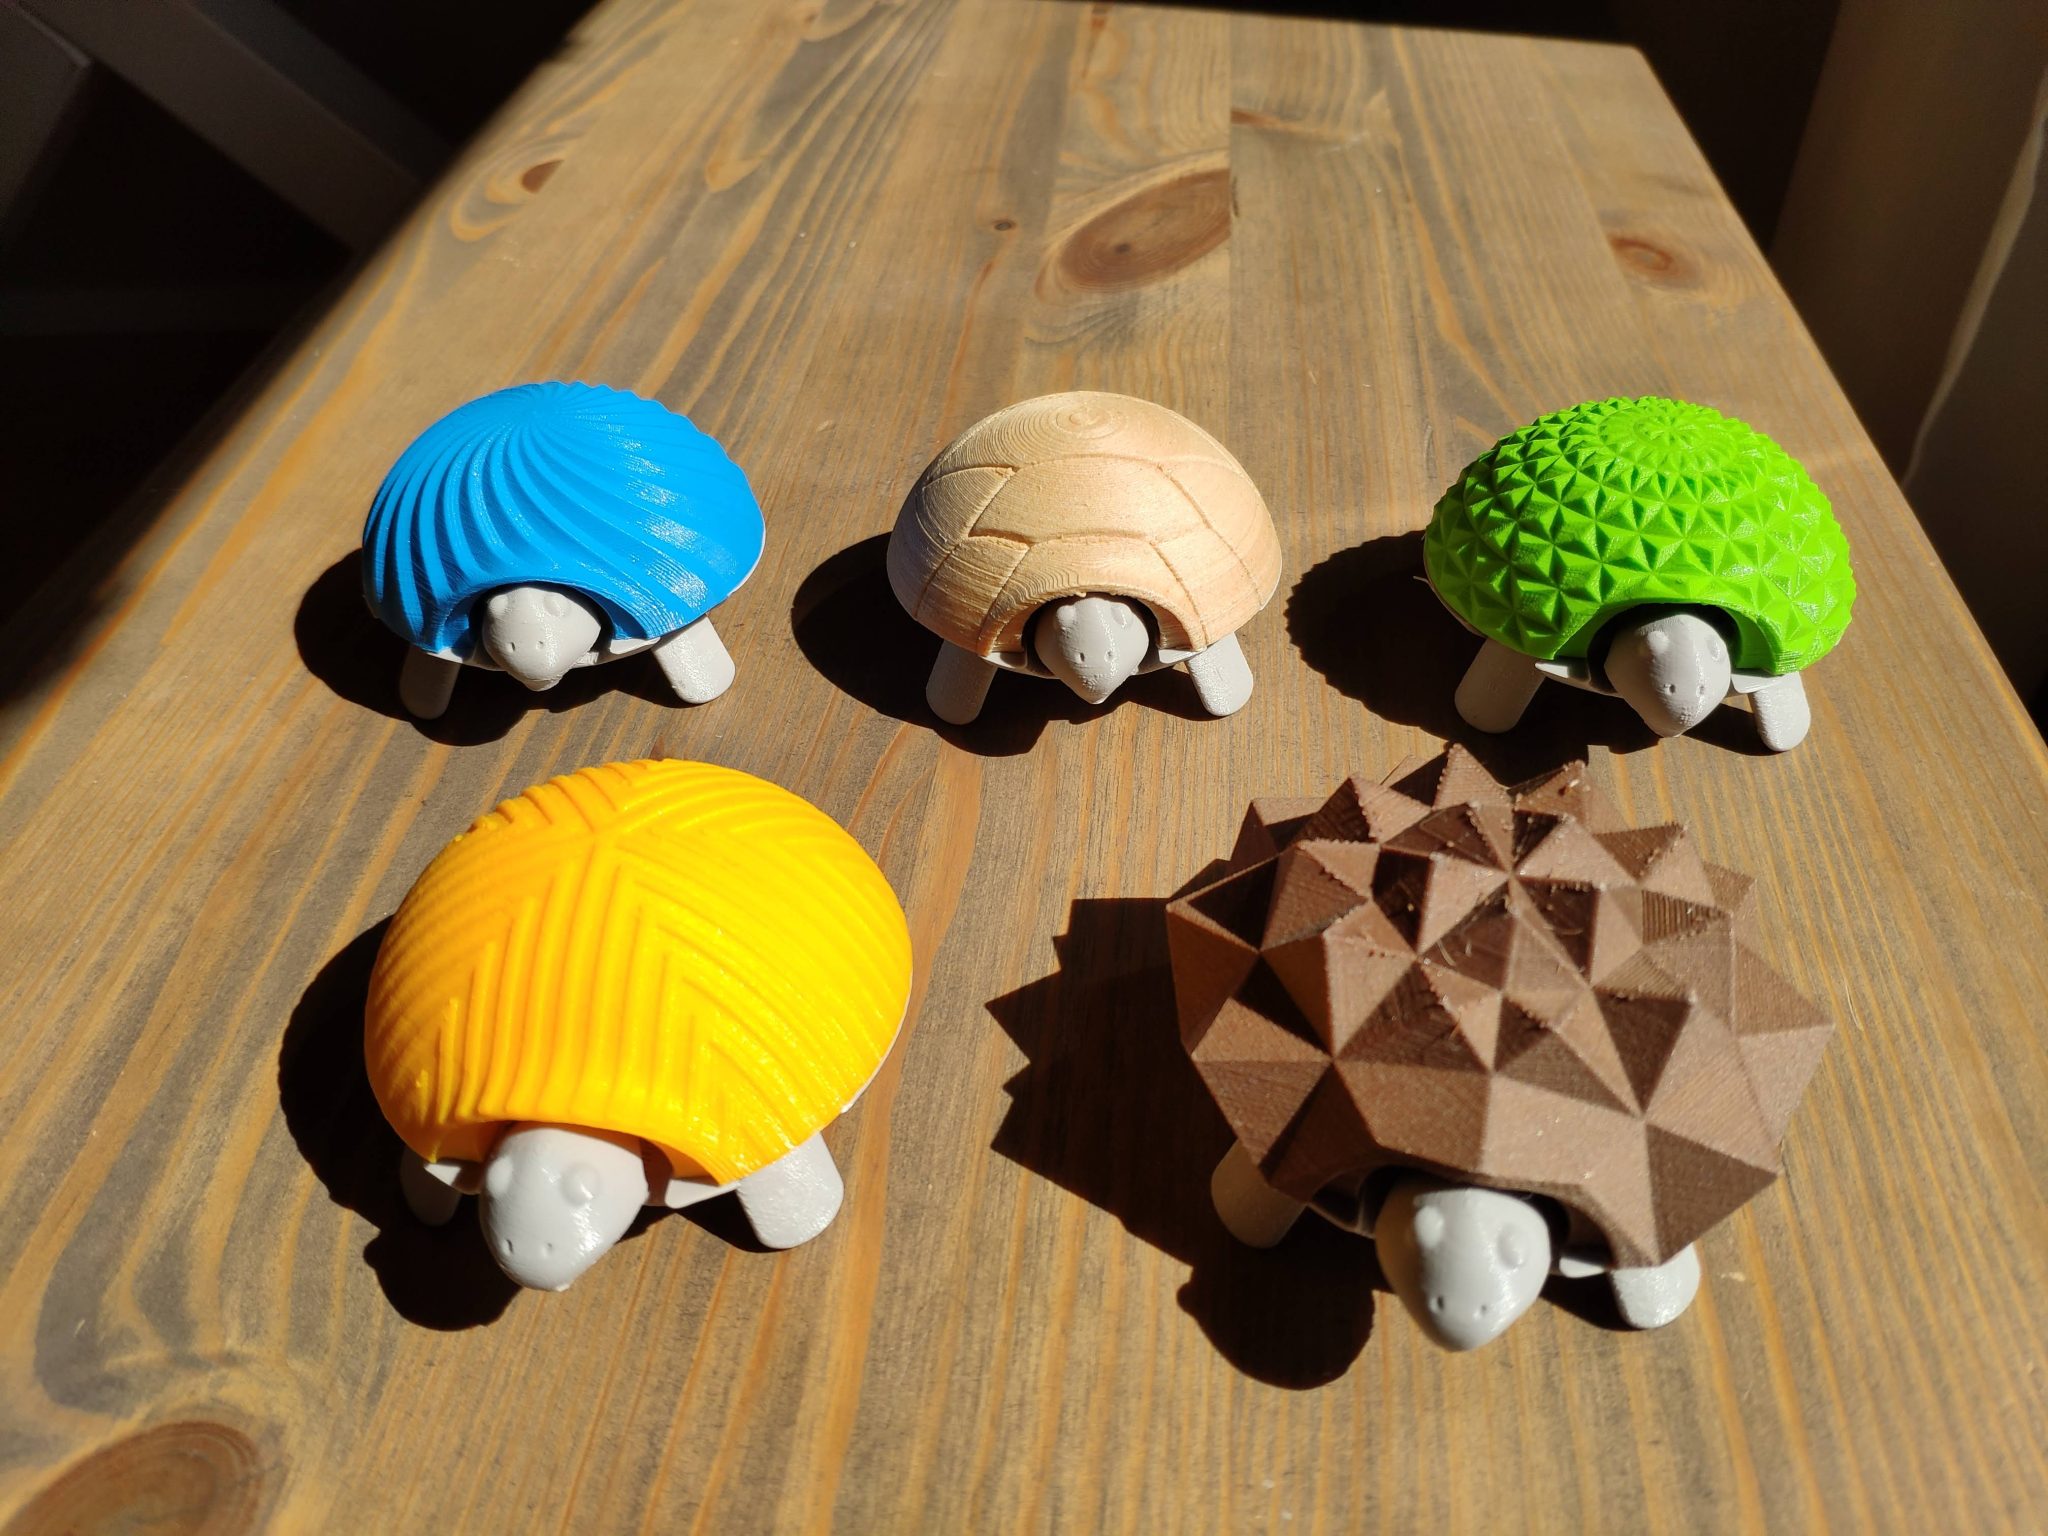 3D printed hedgehogs.